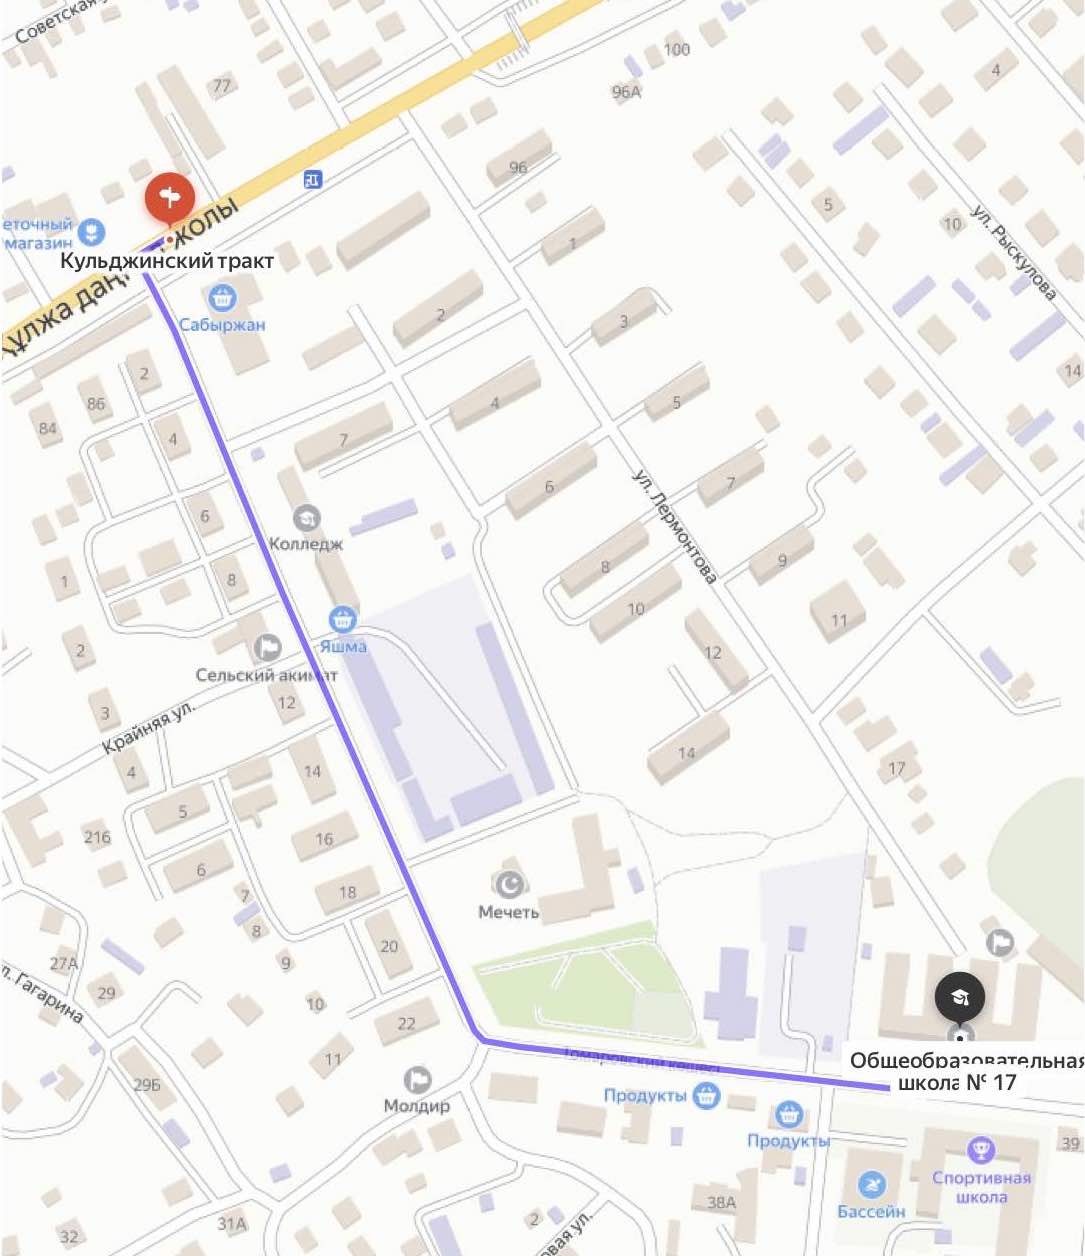 Карта проезда к школе с Кульджинского тракта